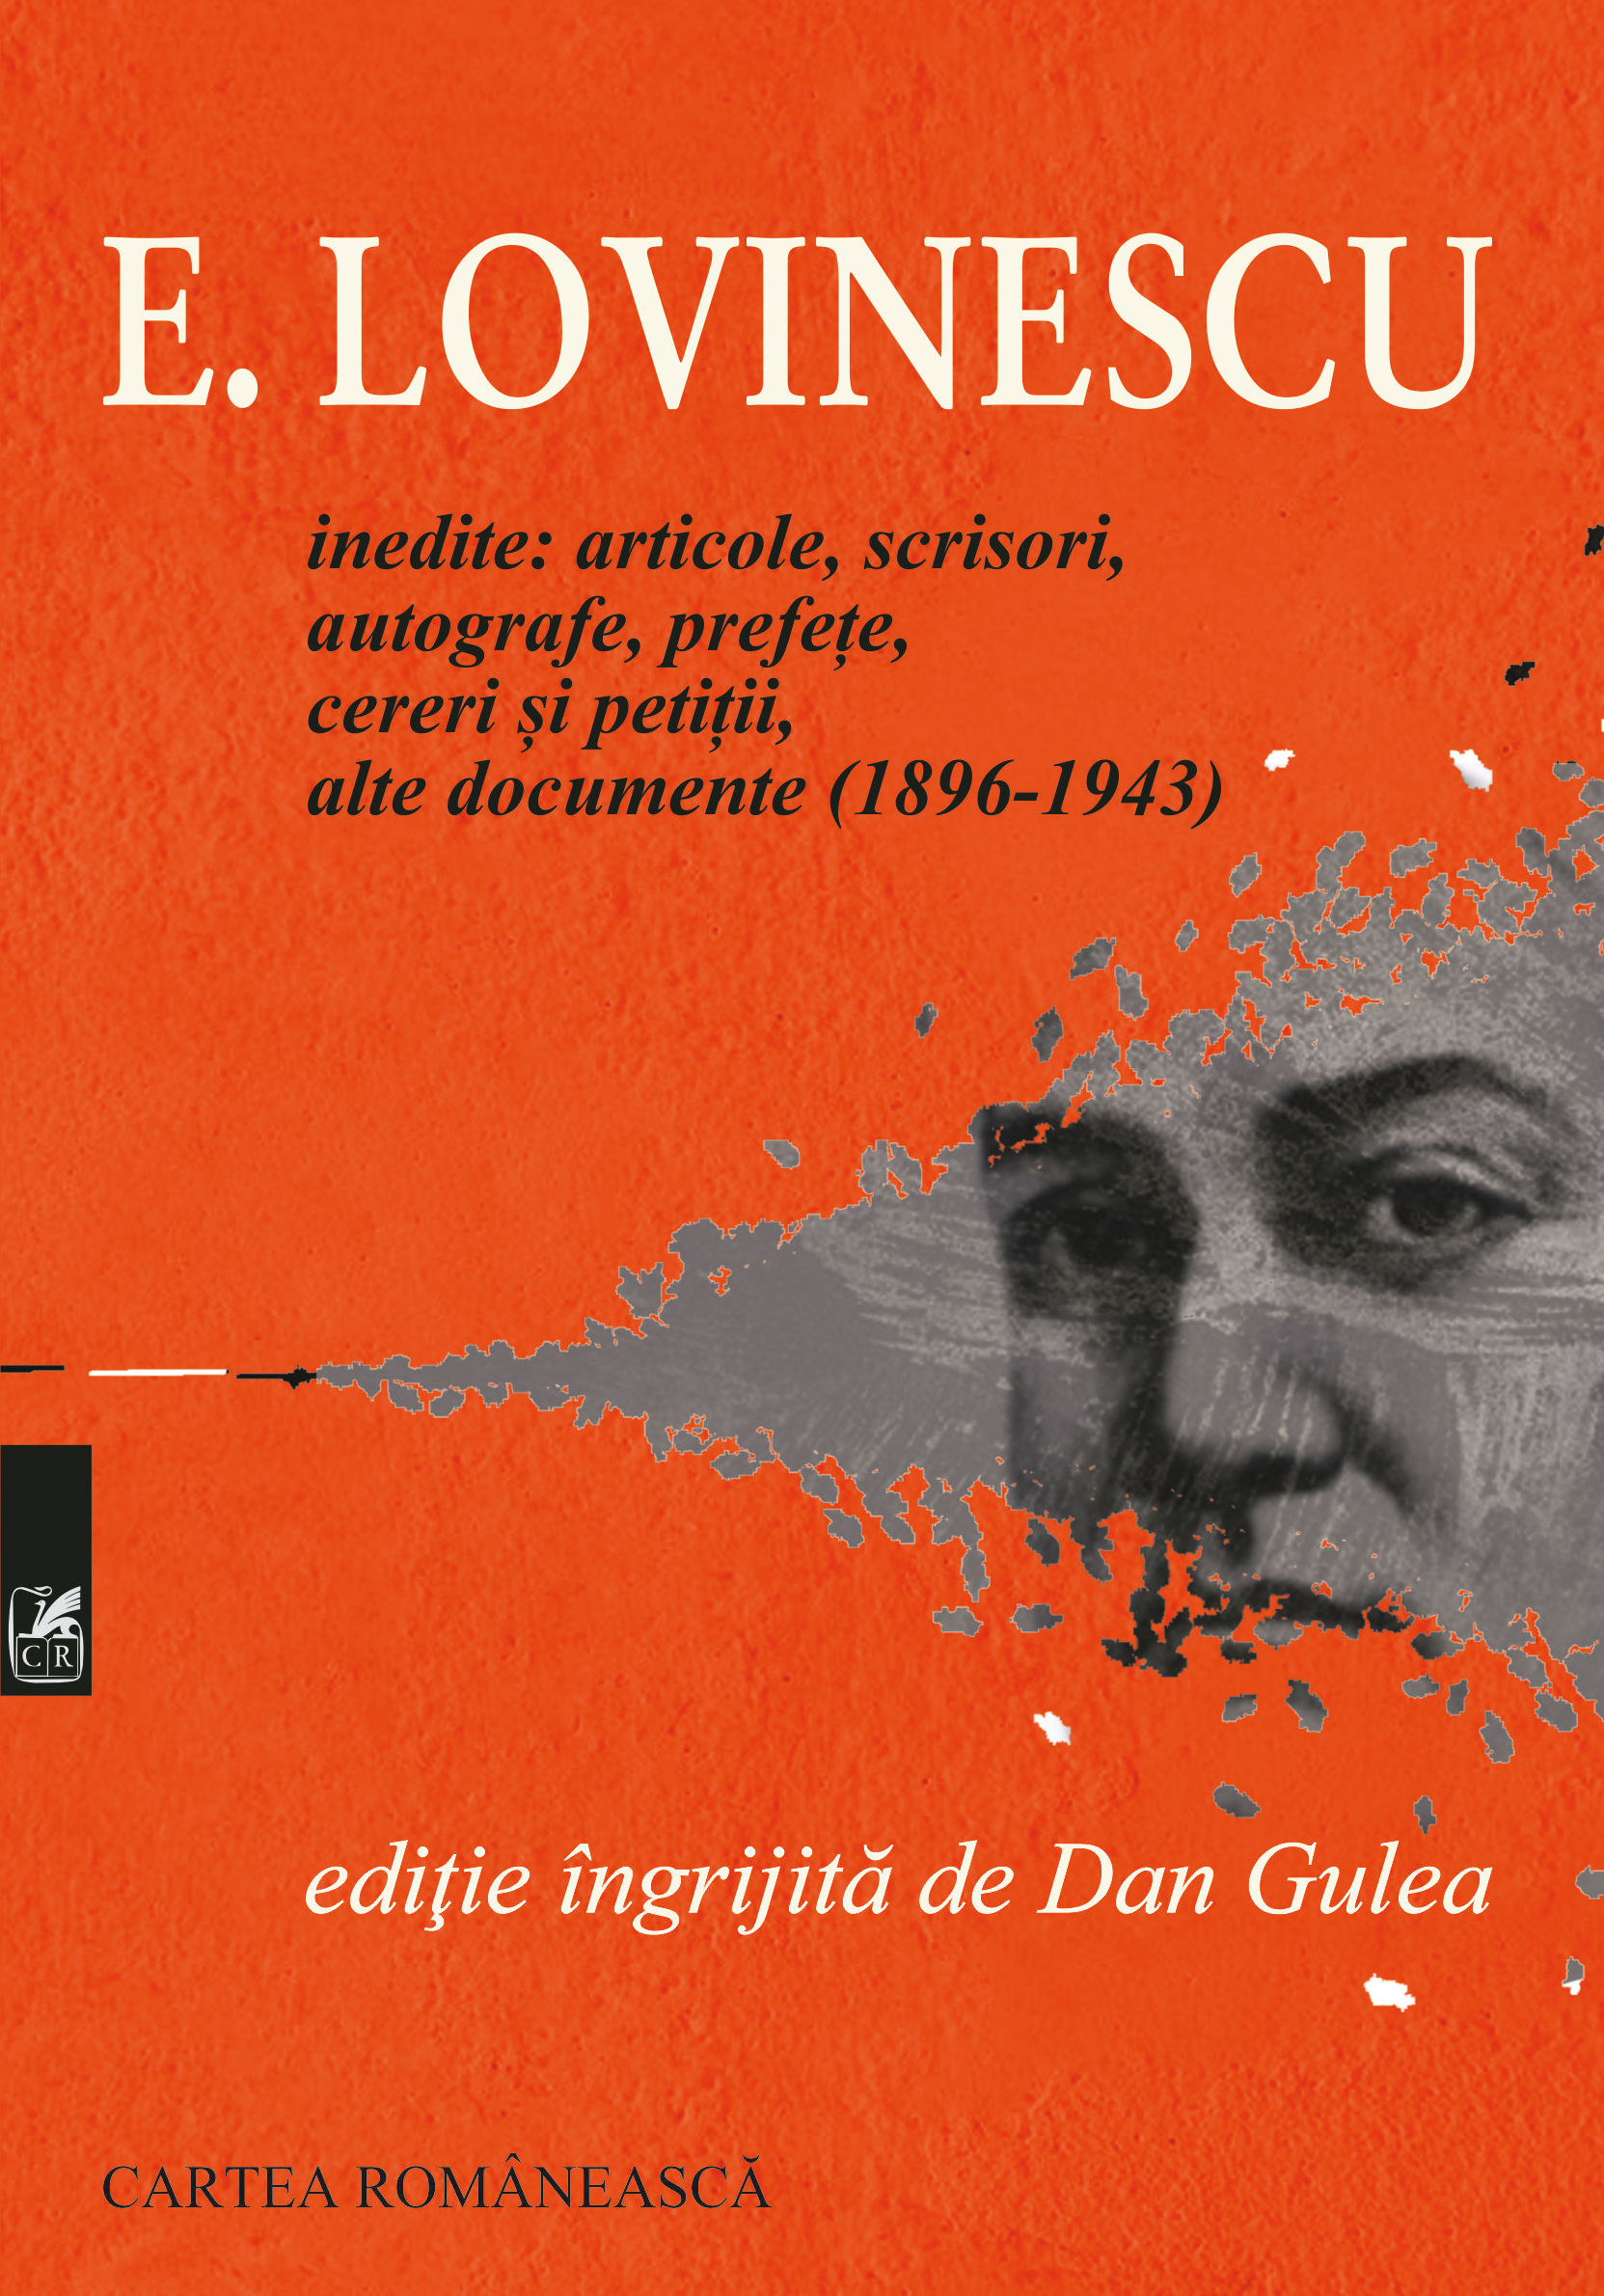 E. Lovinescu - Dan Gulea